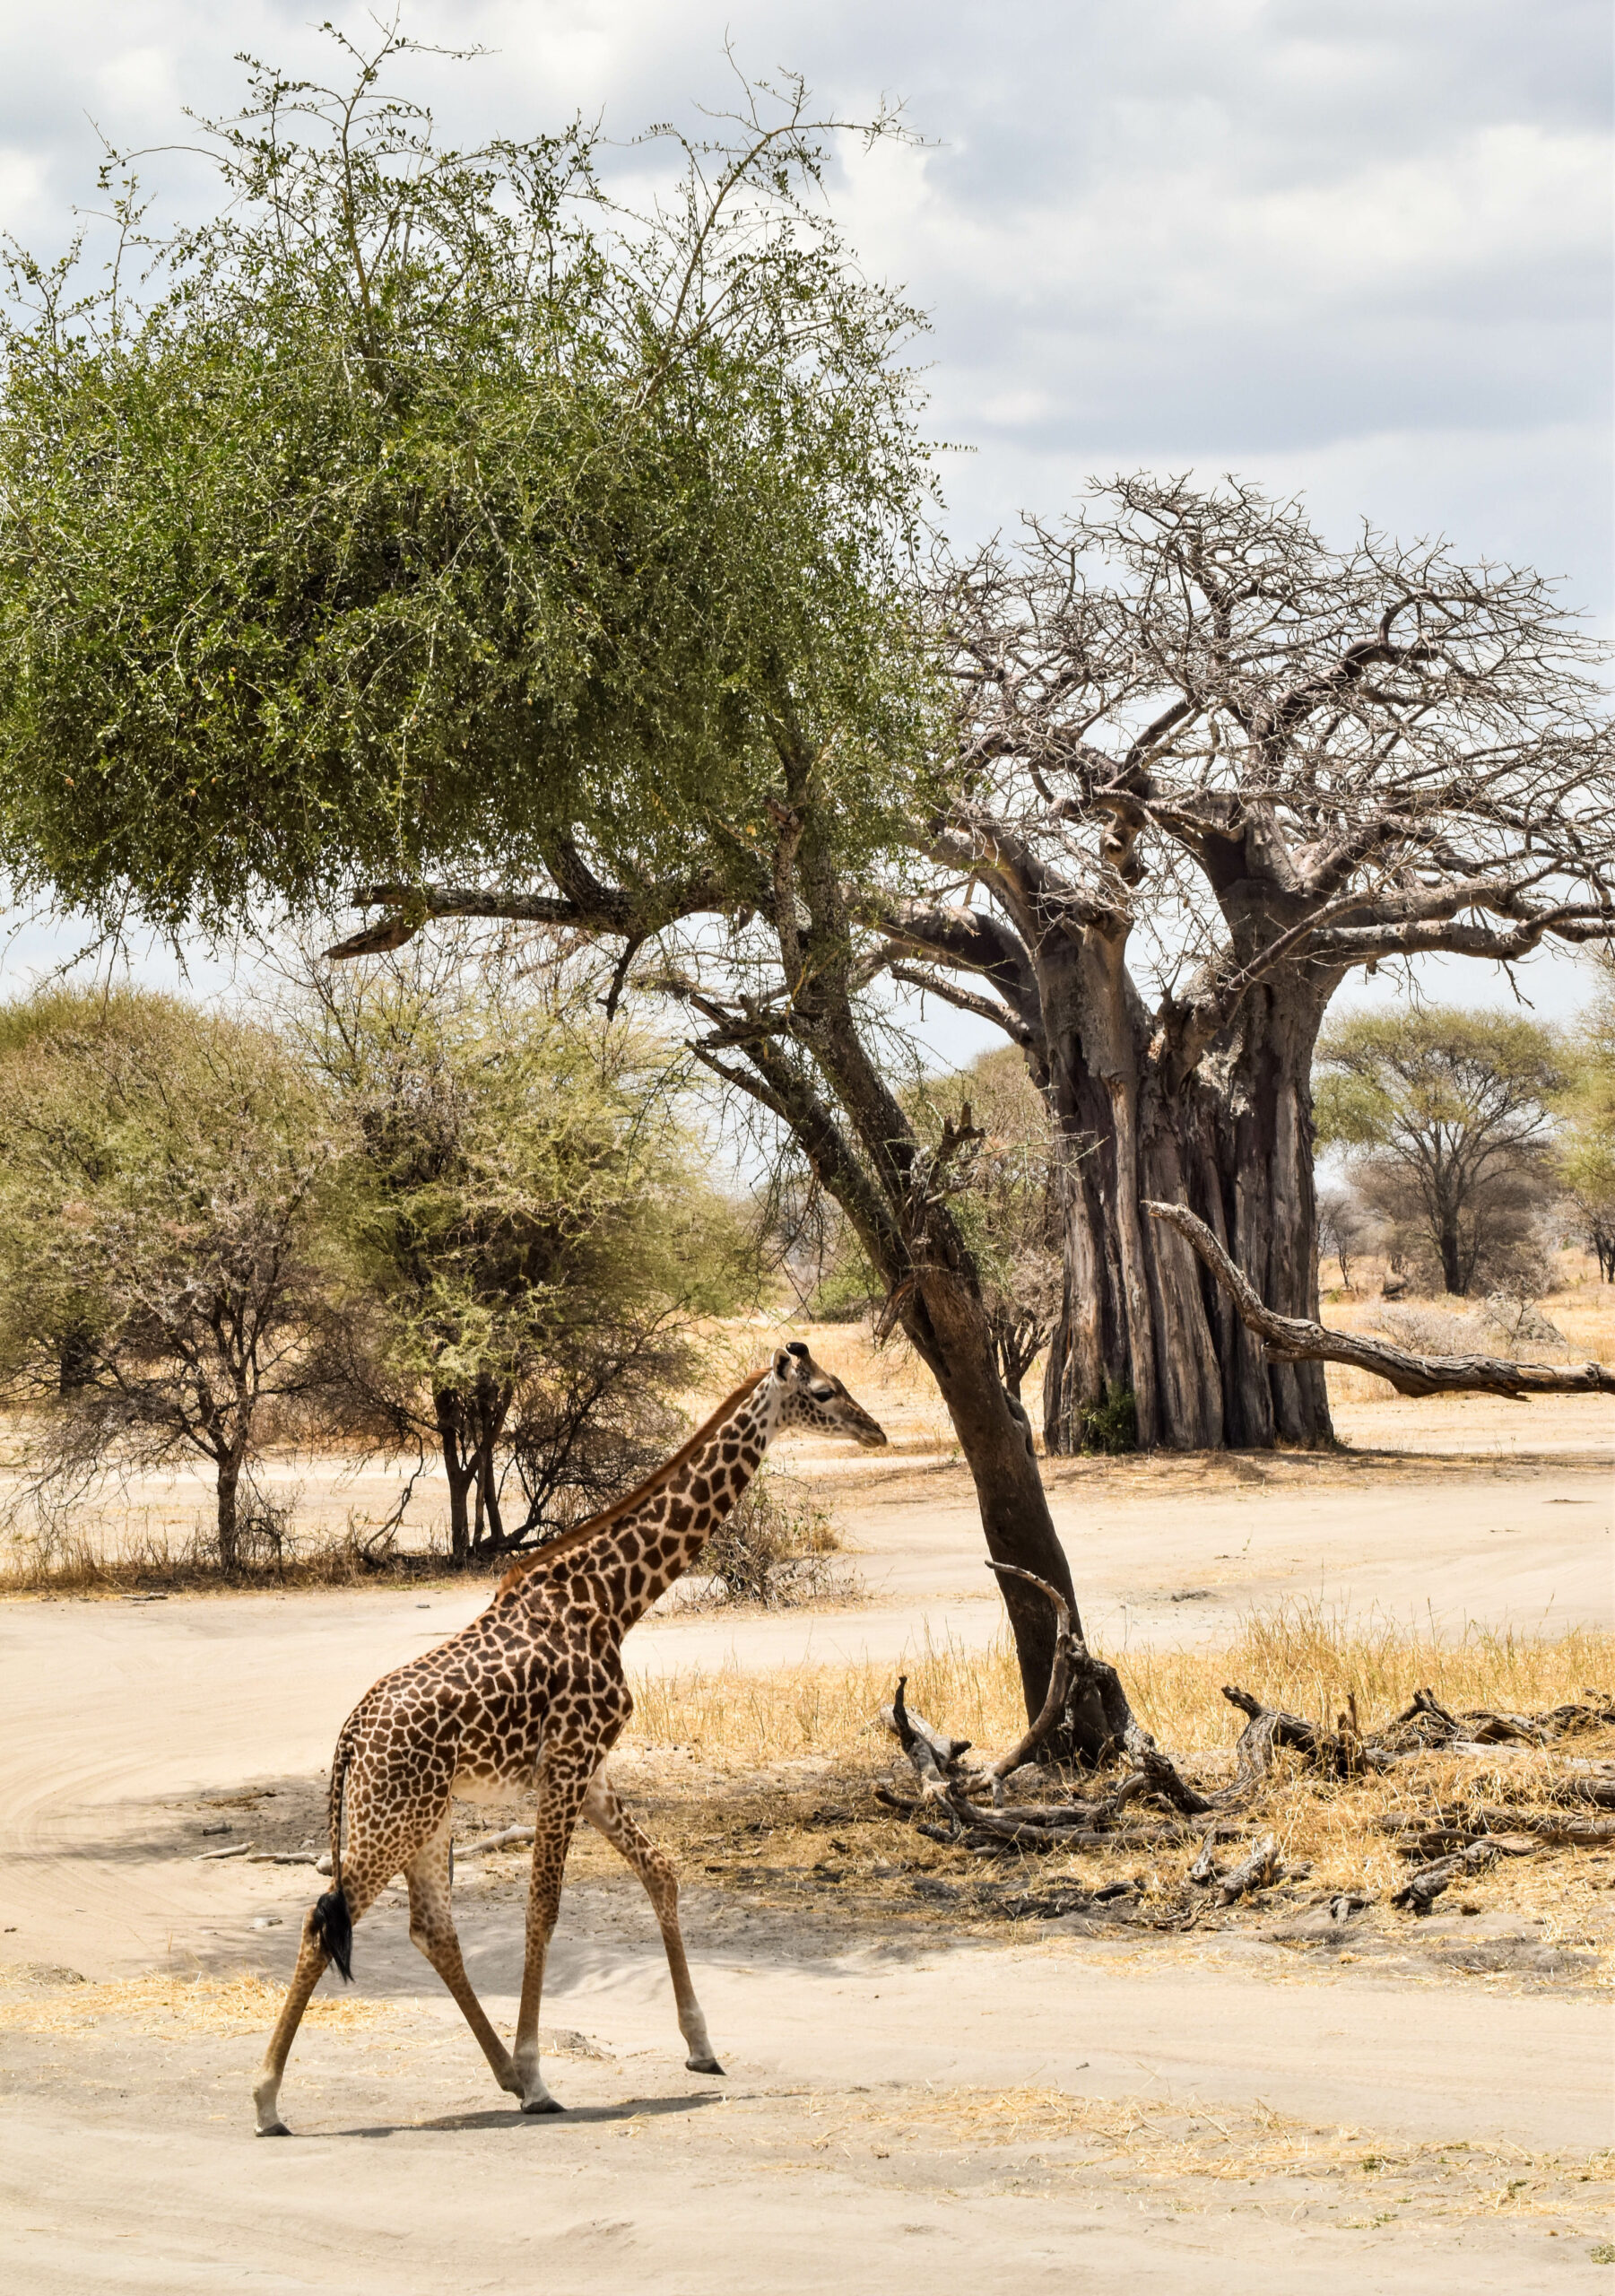 girafe traversant une route de terre, devant un baobab au loin